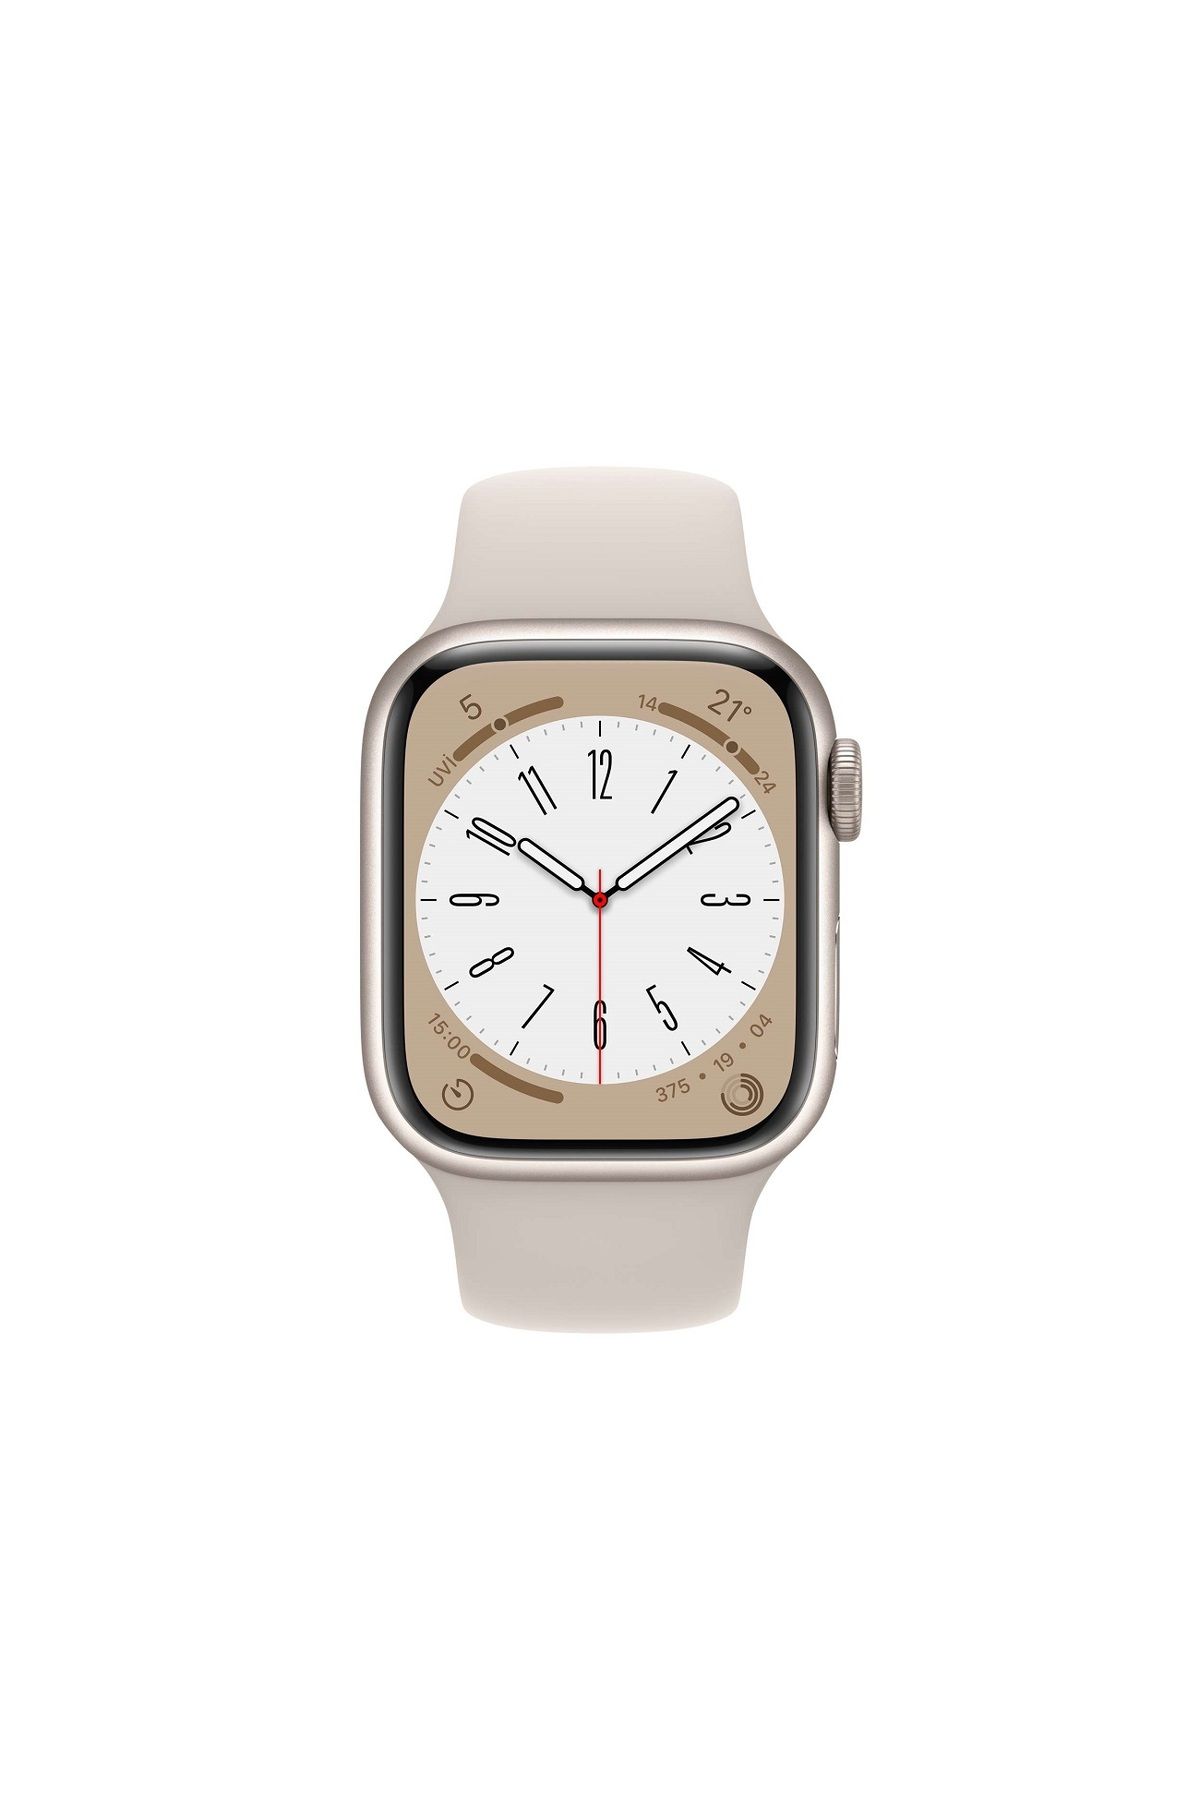 Şıktek Apple Uyumlu Watch 8 Pro Akıllı Saat GPS NFC Pusula özellikli Akıllı Saat 45mm